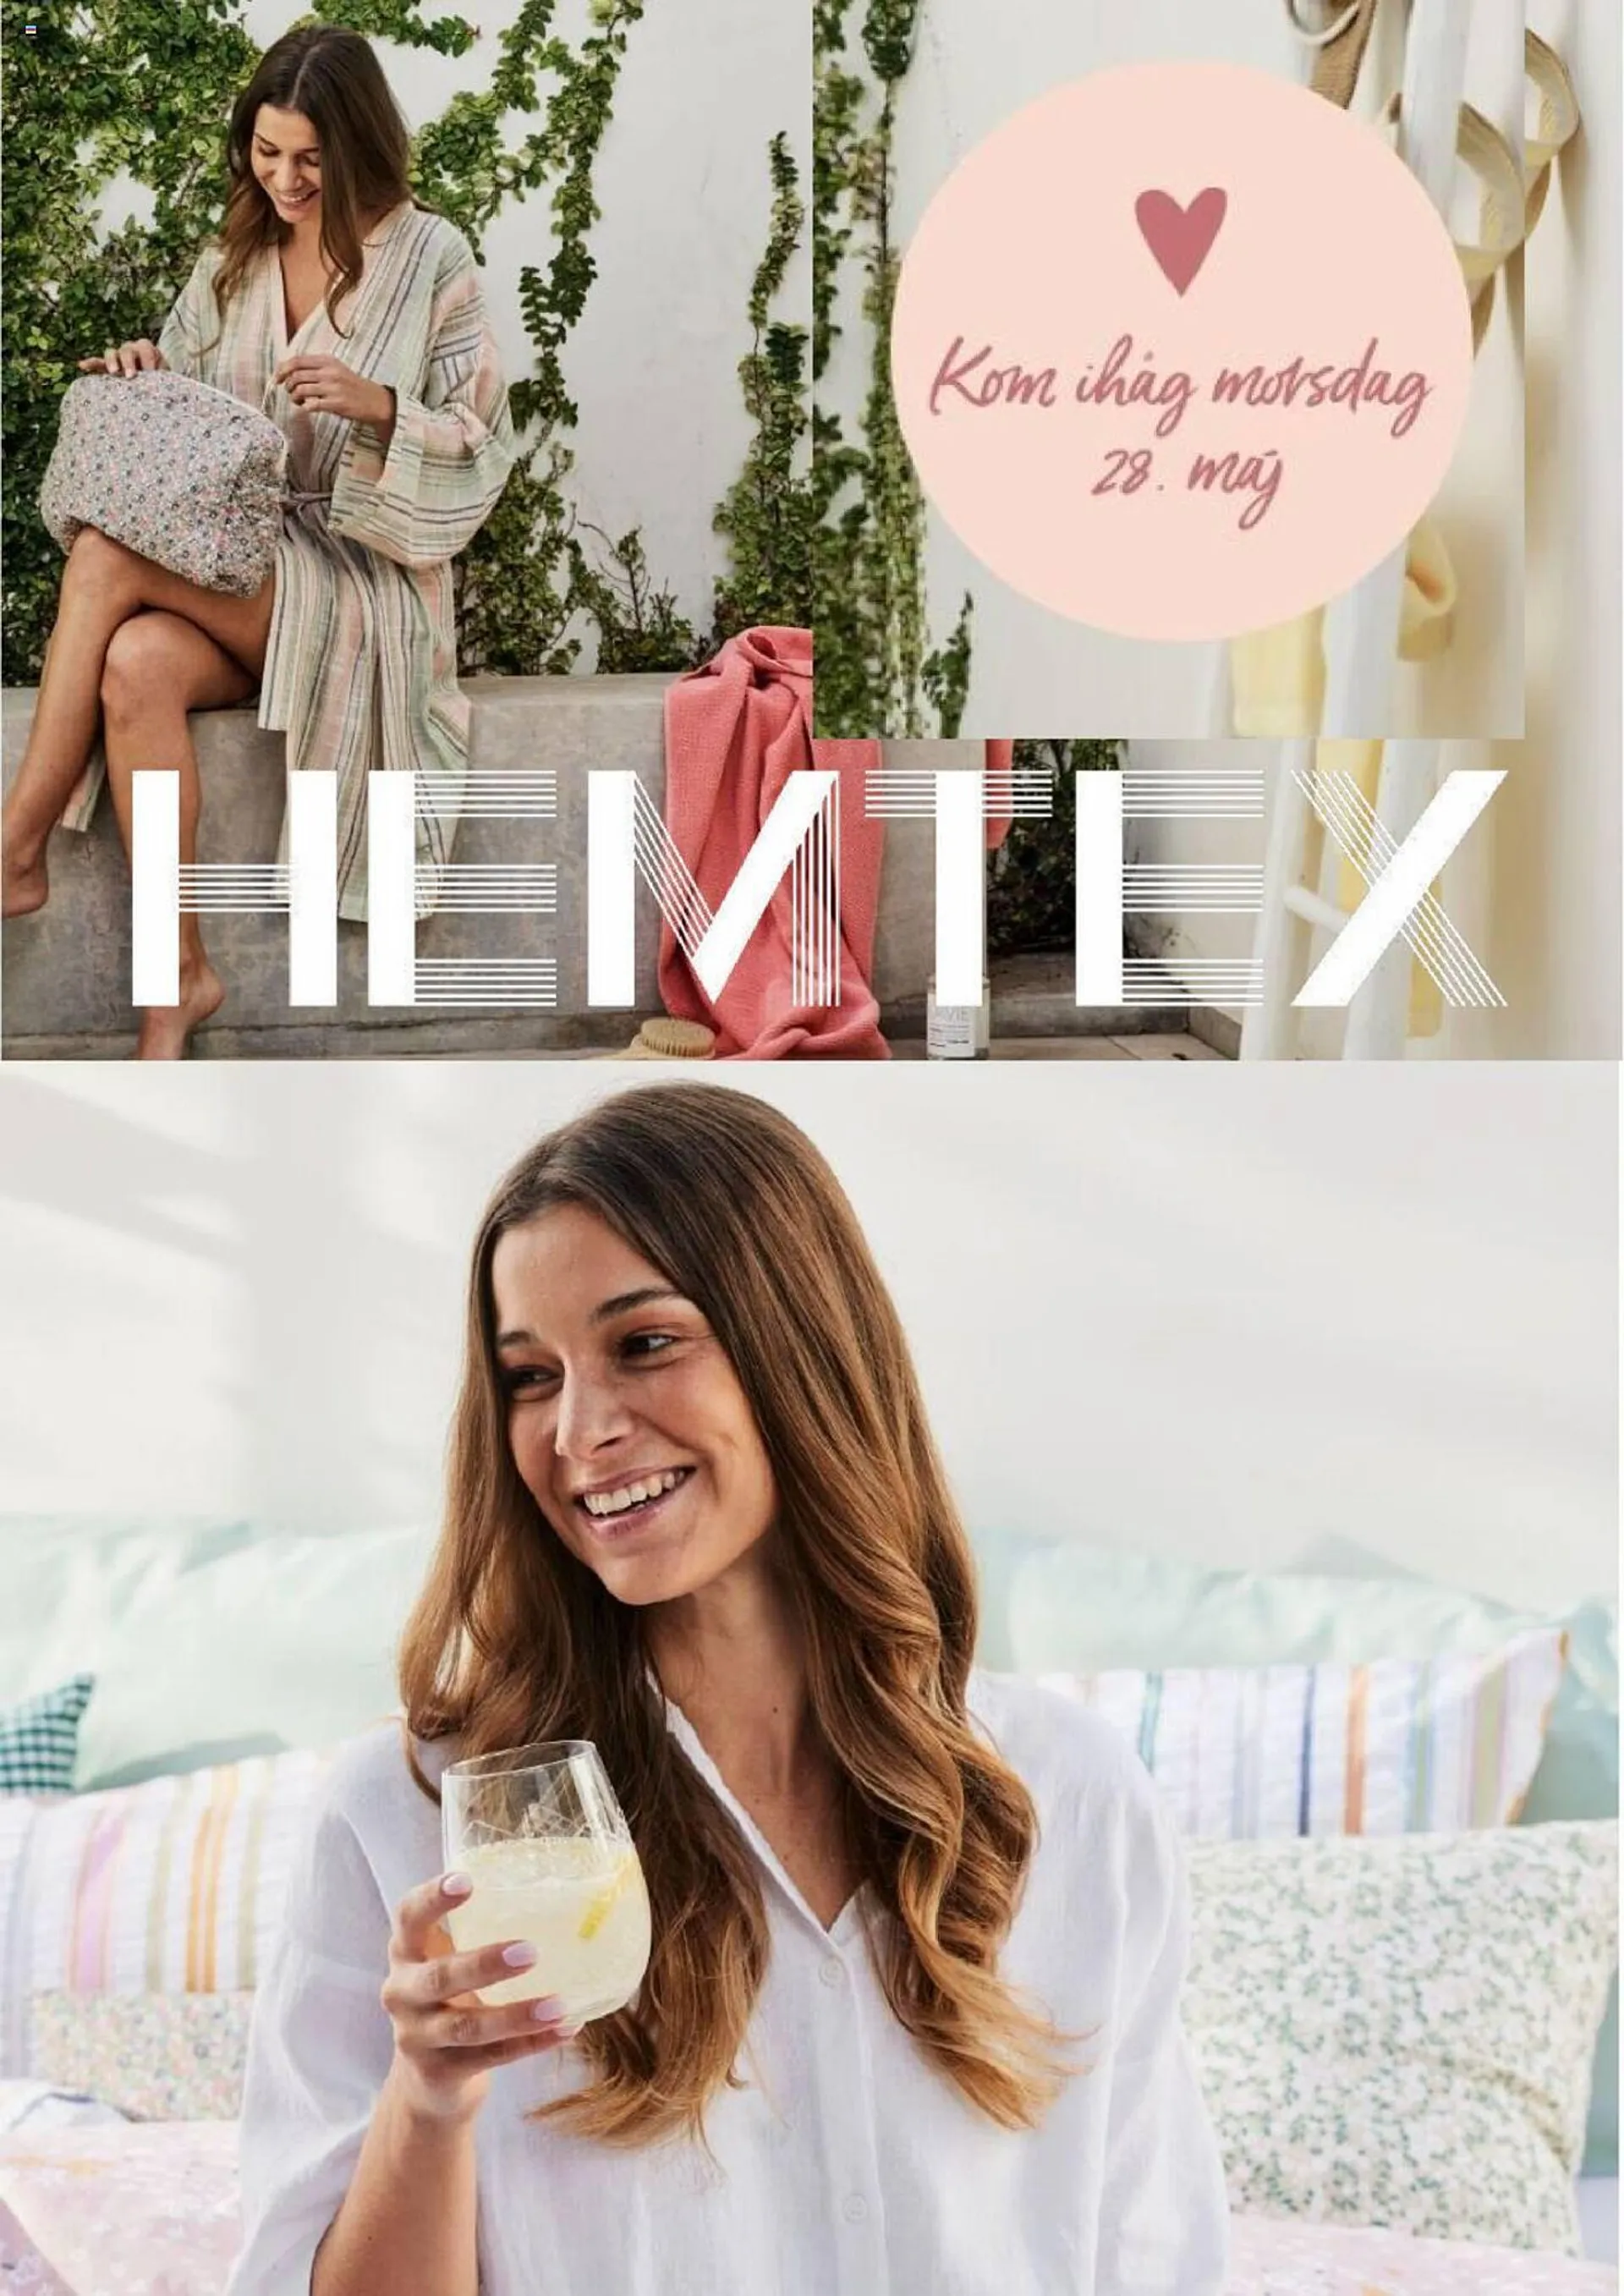 Hemtex reklamblad